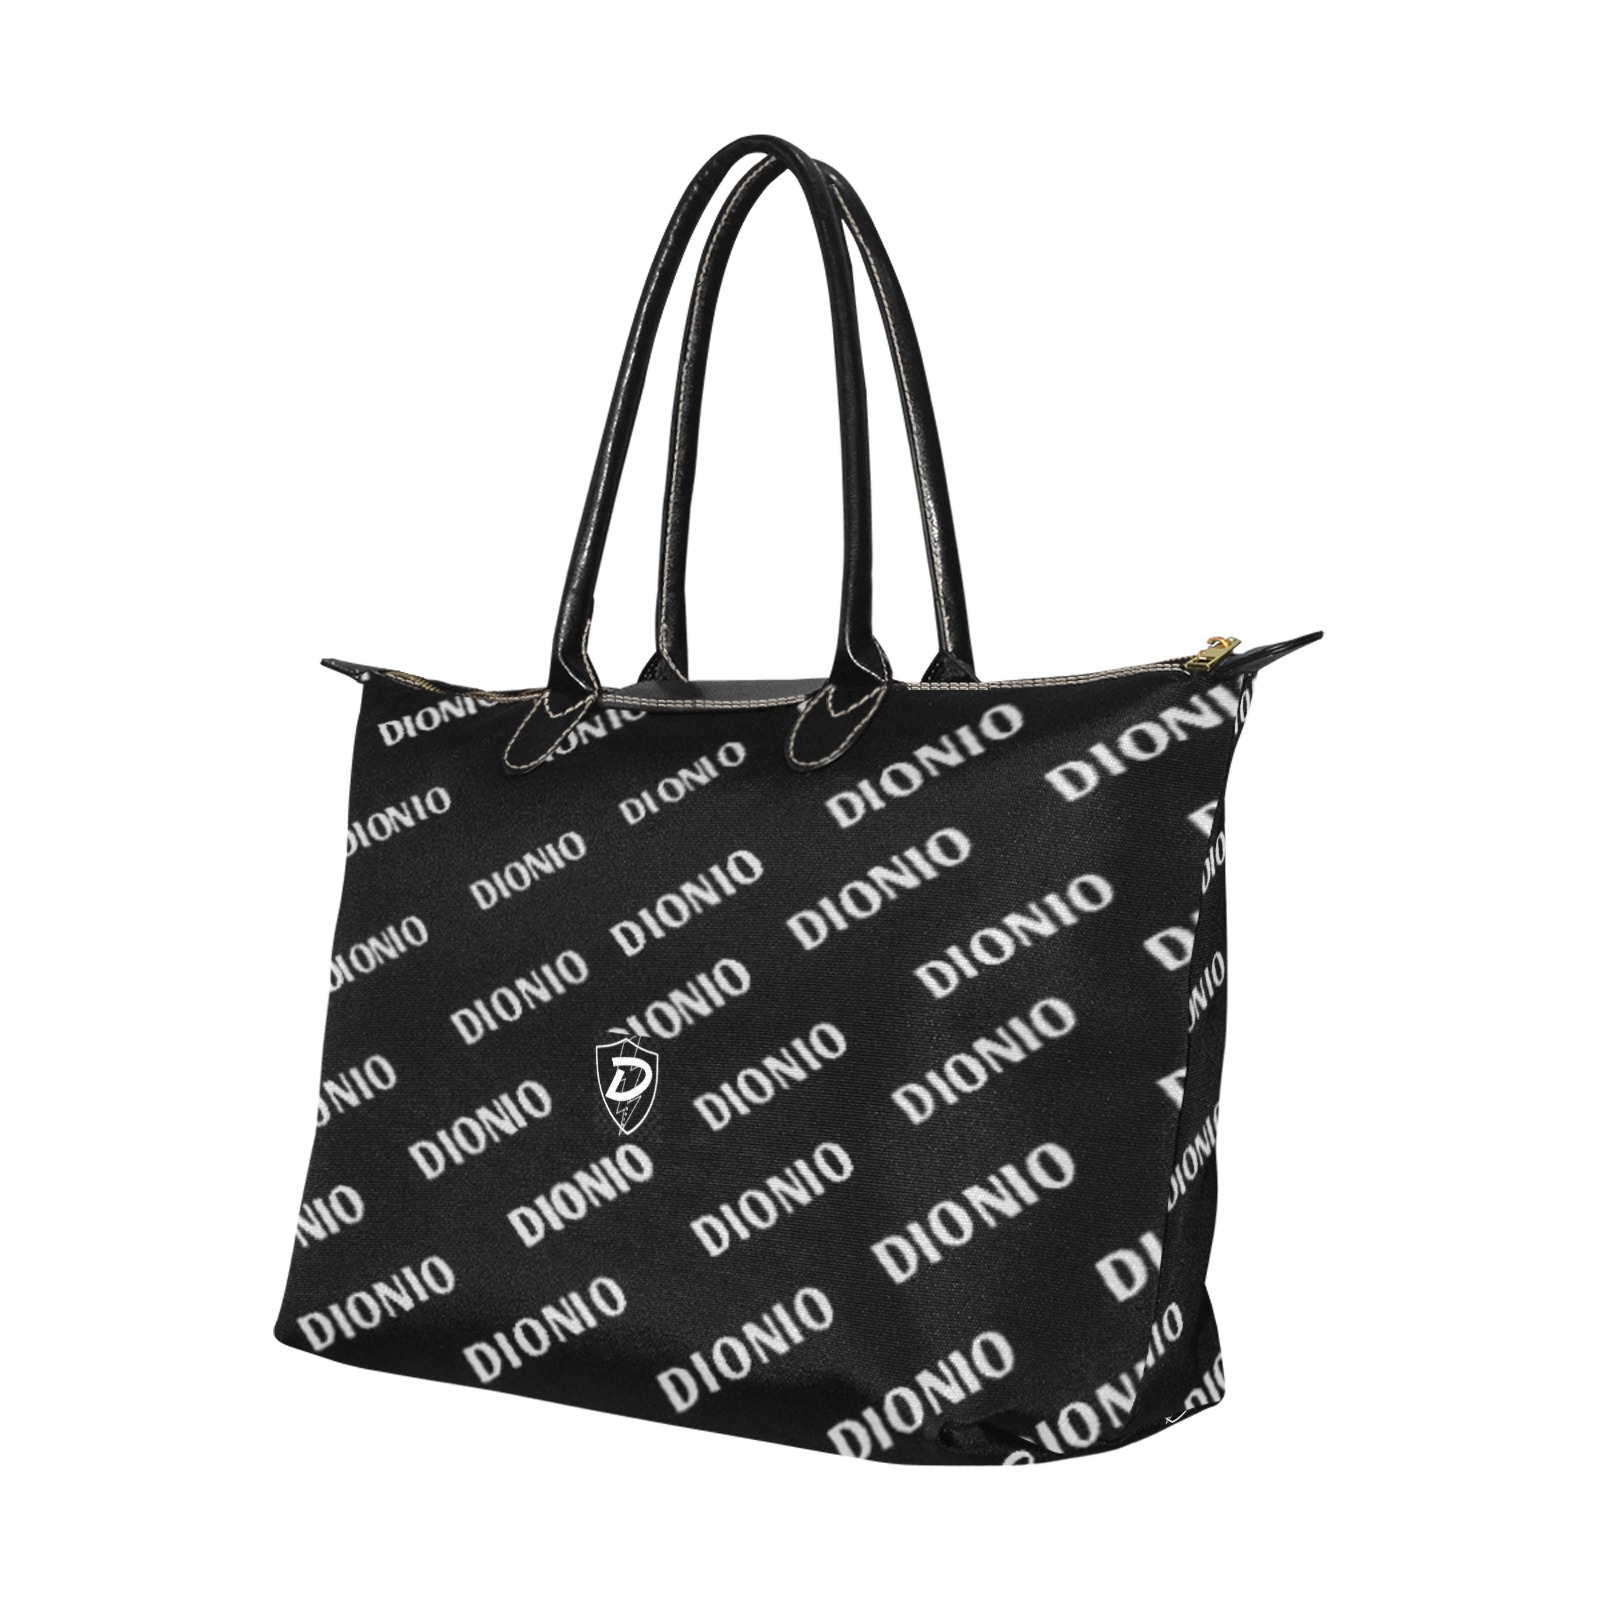 DIONIO - Women's Single Shoulder Lady Handbag (Black Steppers) Single-Shoulder Lady Handbag (Model 1714)